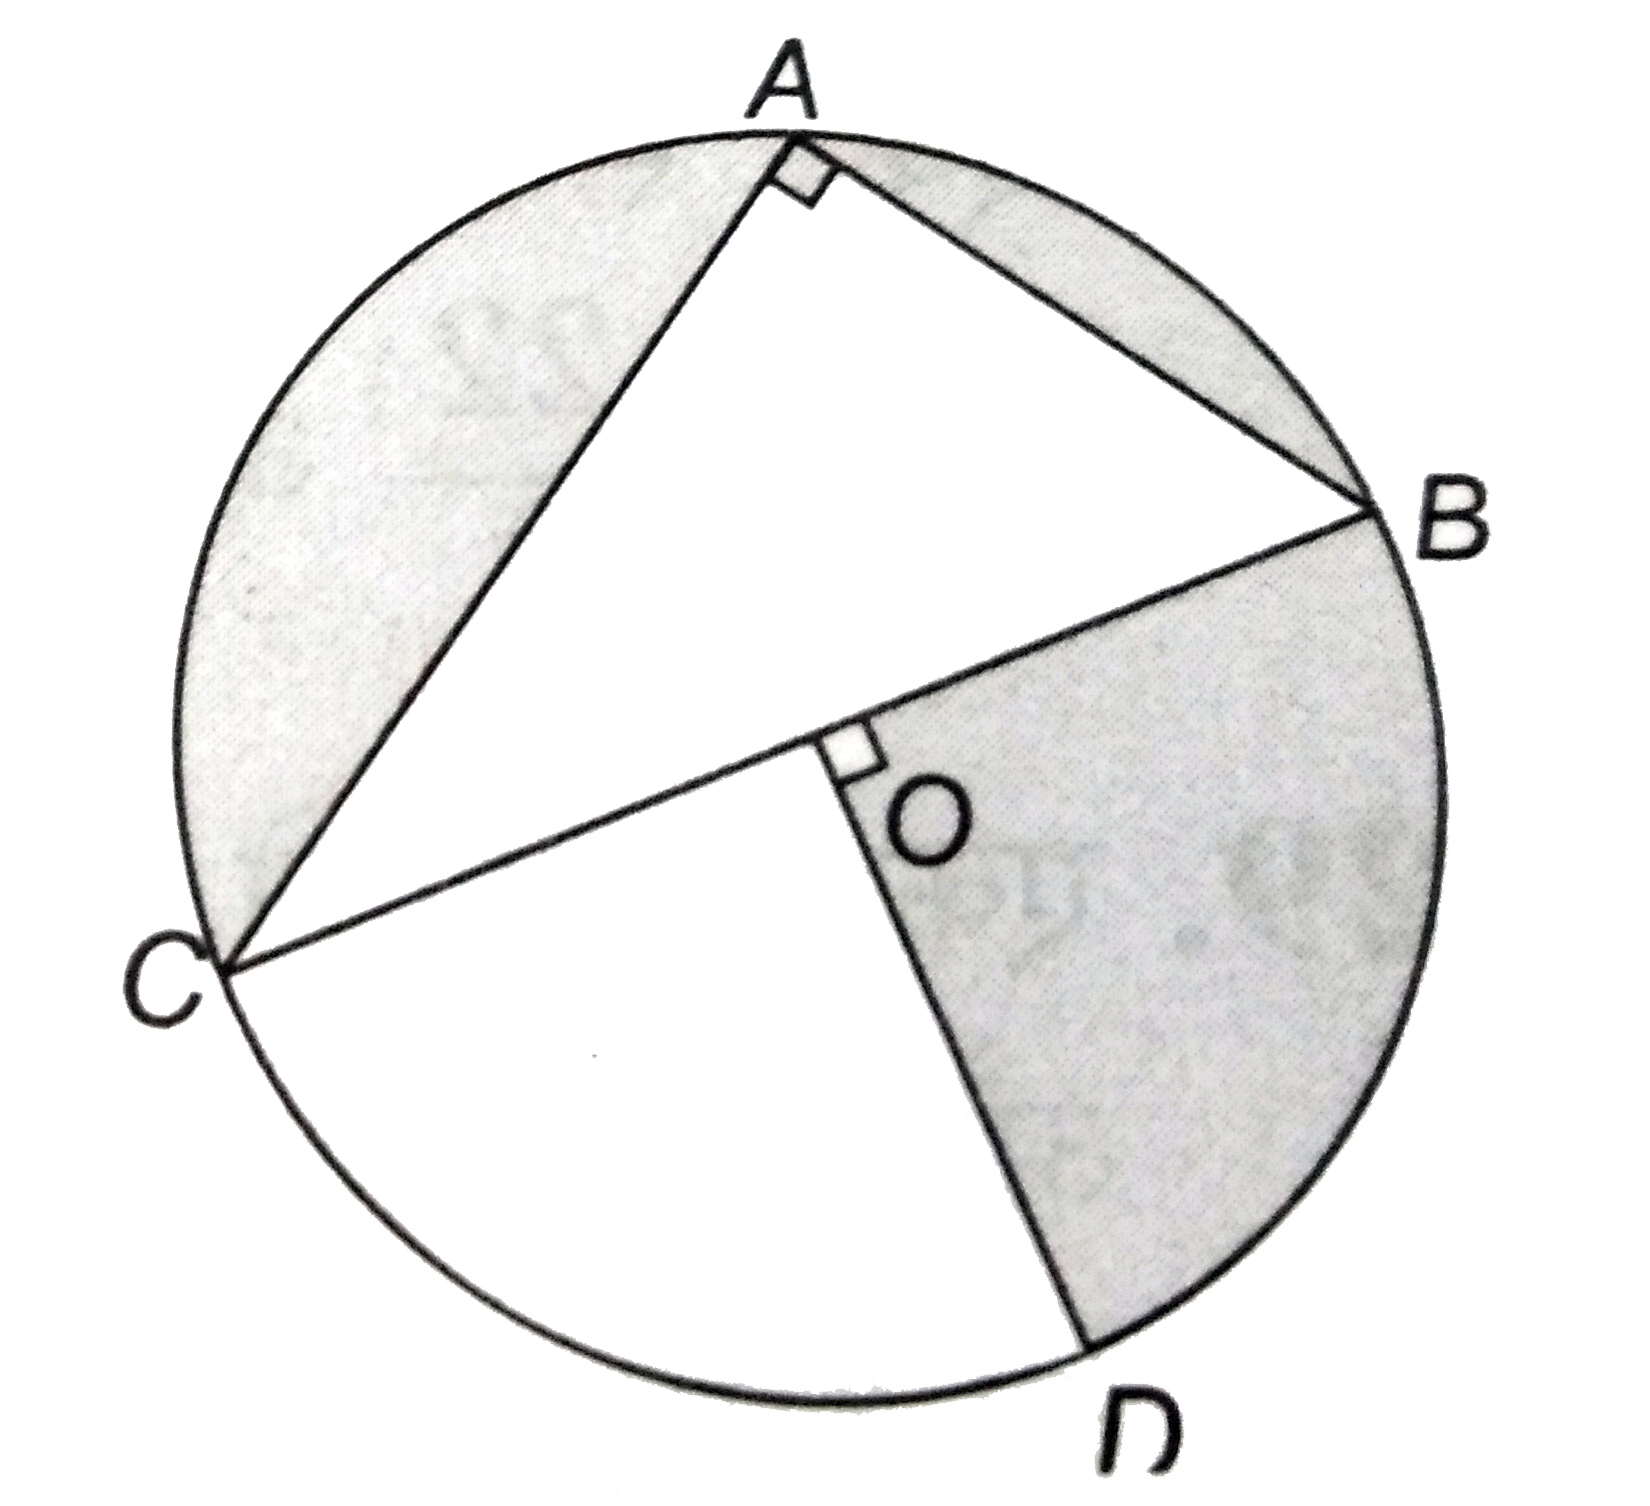 दिये चित्र में , O  वृत्त का केंद्र है , जिसमें AC = 24    सेमी ,AB = 7   सेमी और angleBOD = 90^(@) है । छायांकित  भाग का क्षेत्रफल  ज्ञात कीजिए ।     ( pi = 3.14  का प्रयोग  करें )